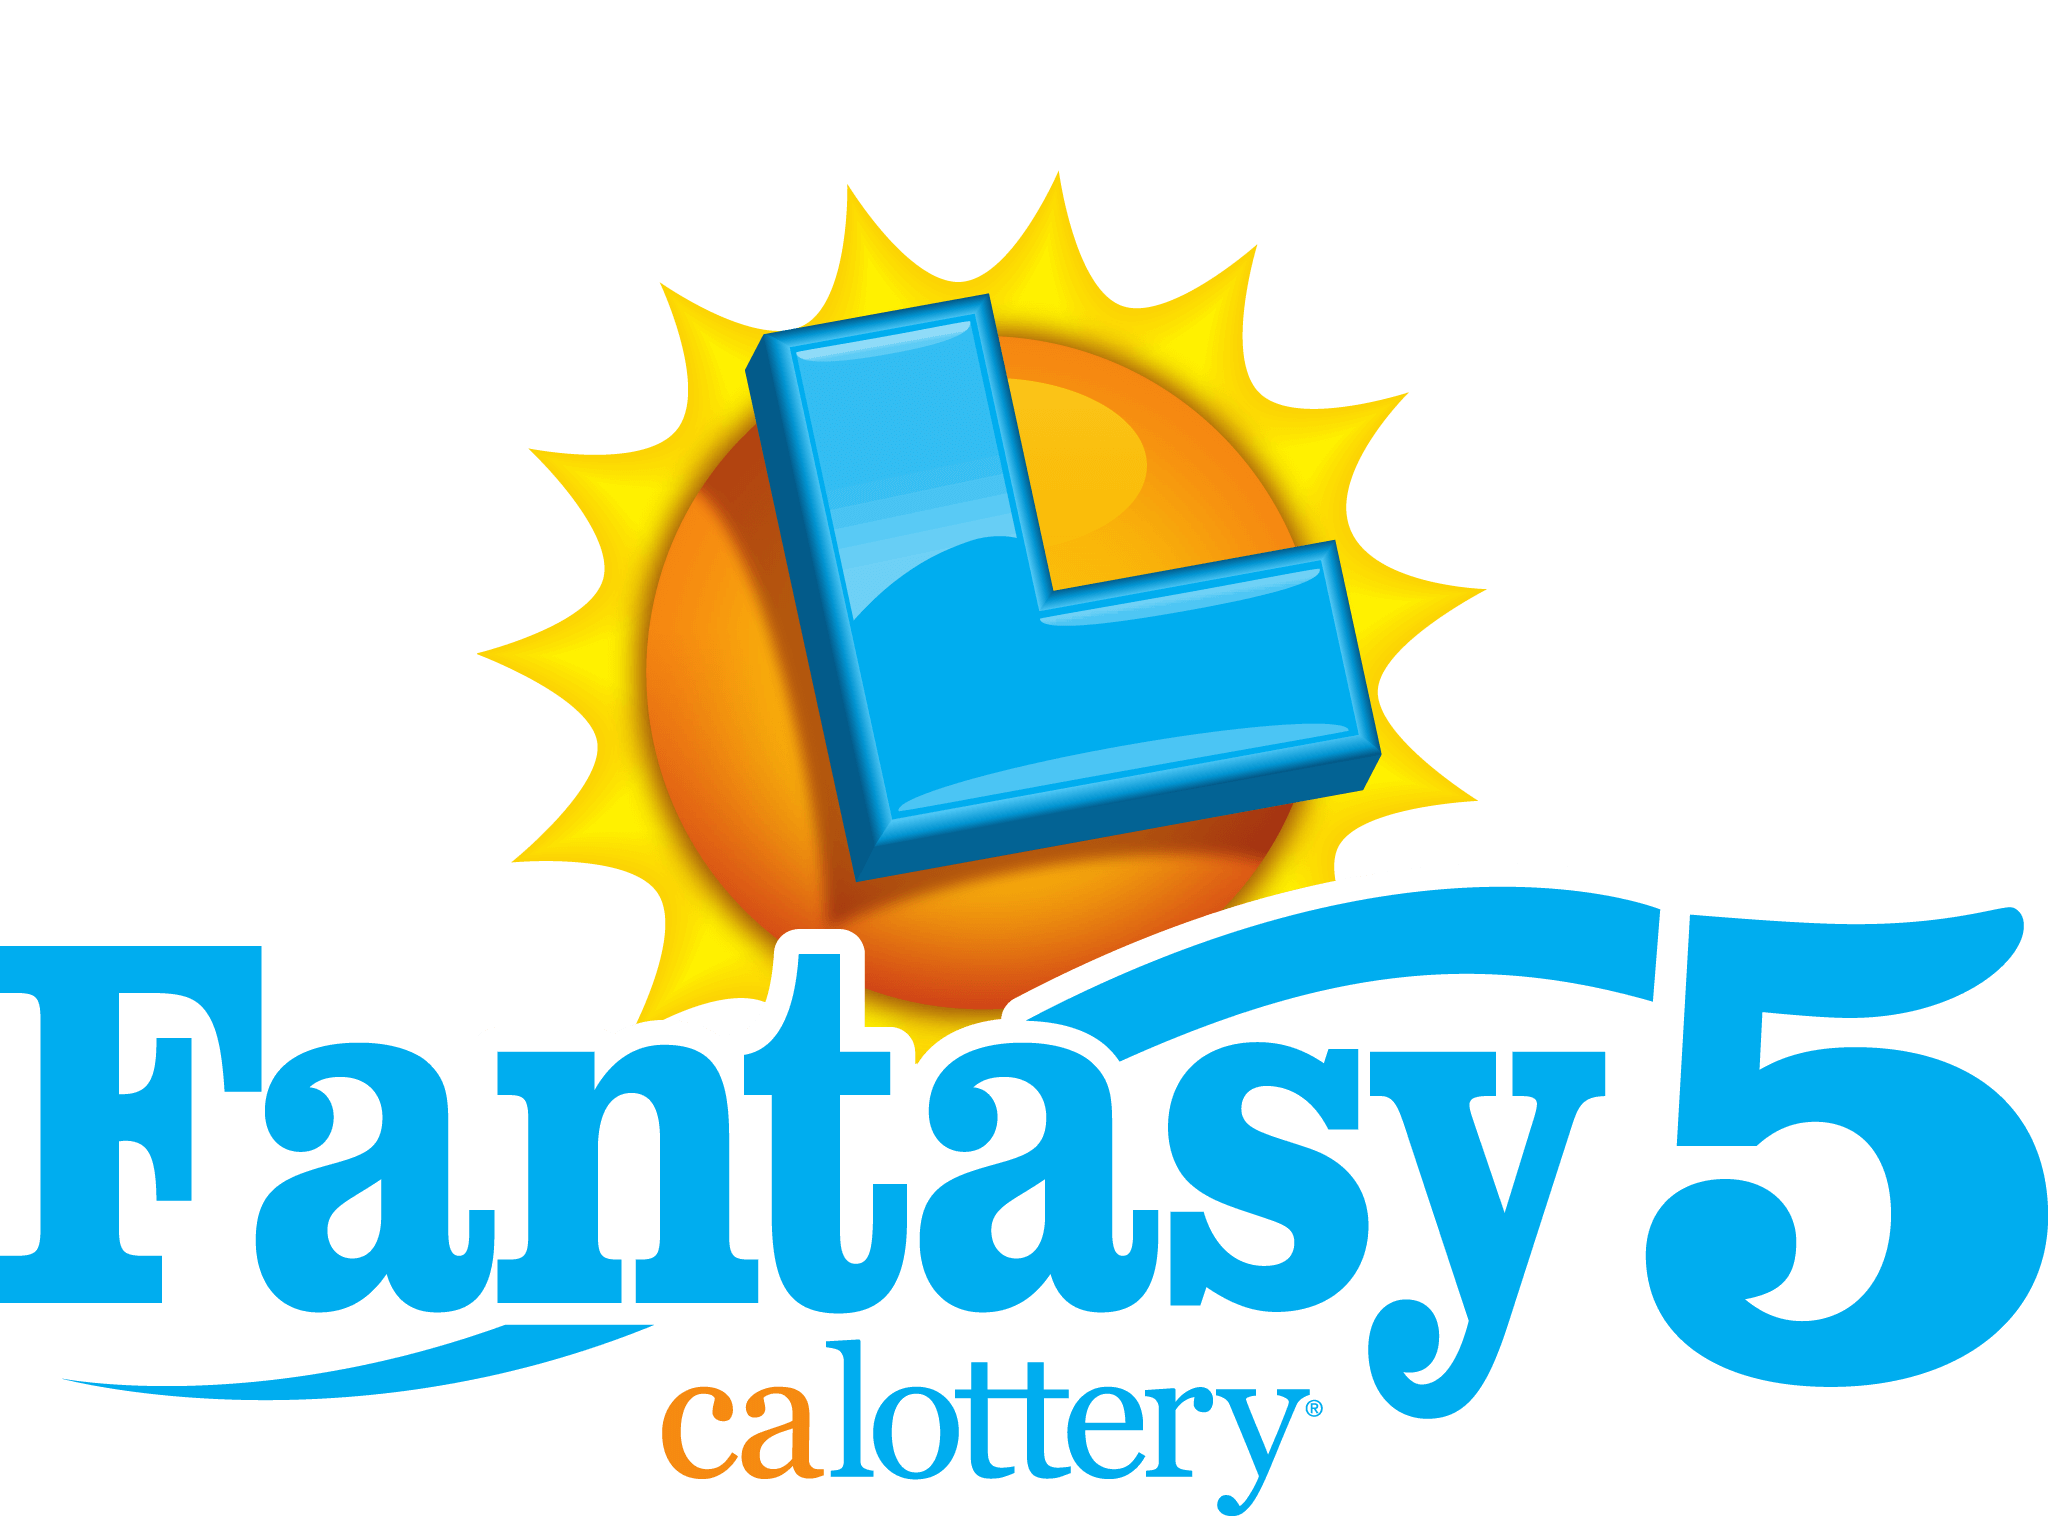 Fantasy 5, calottery